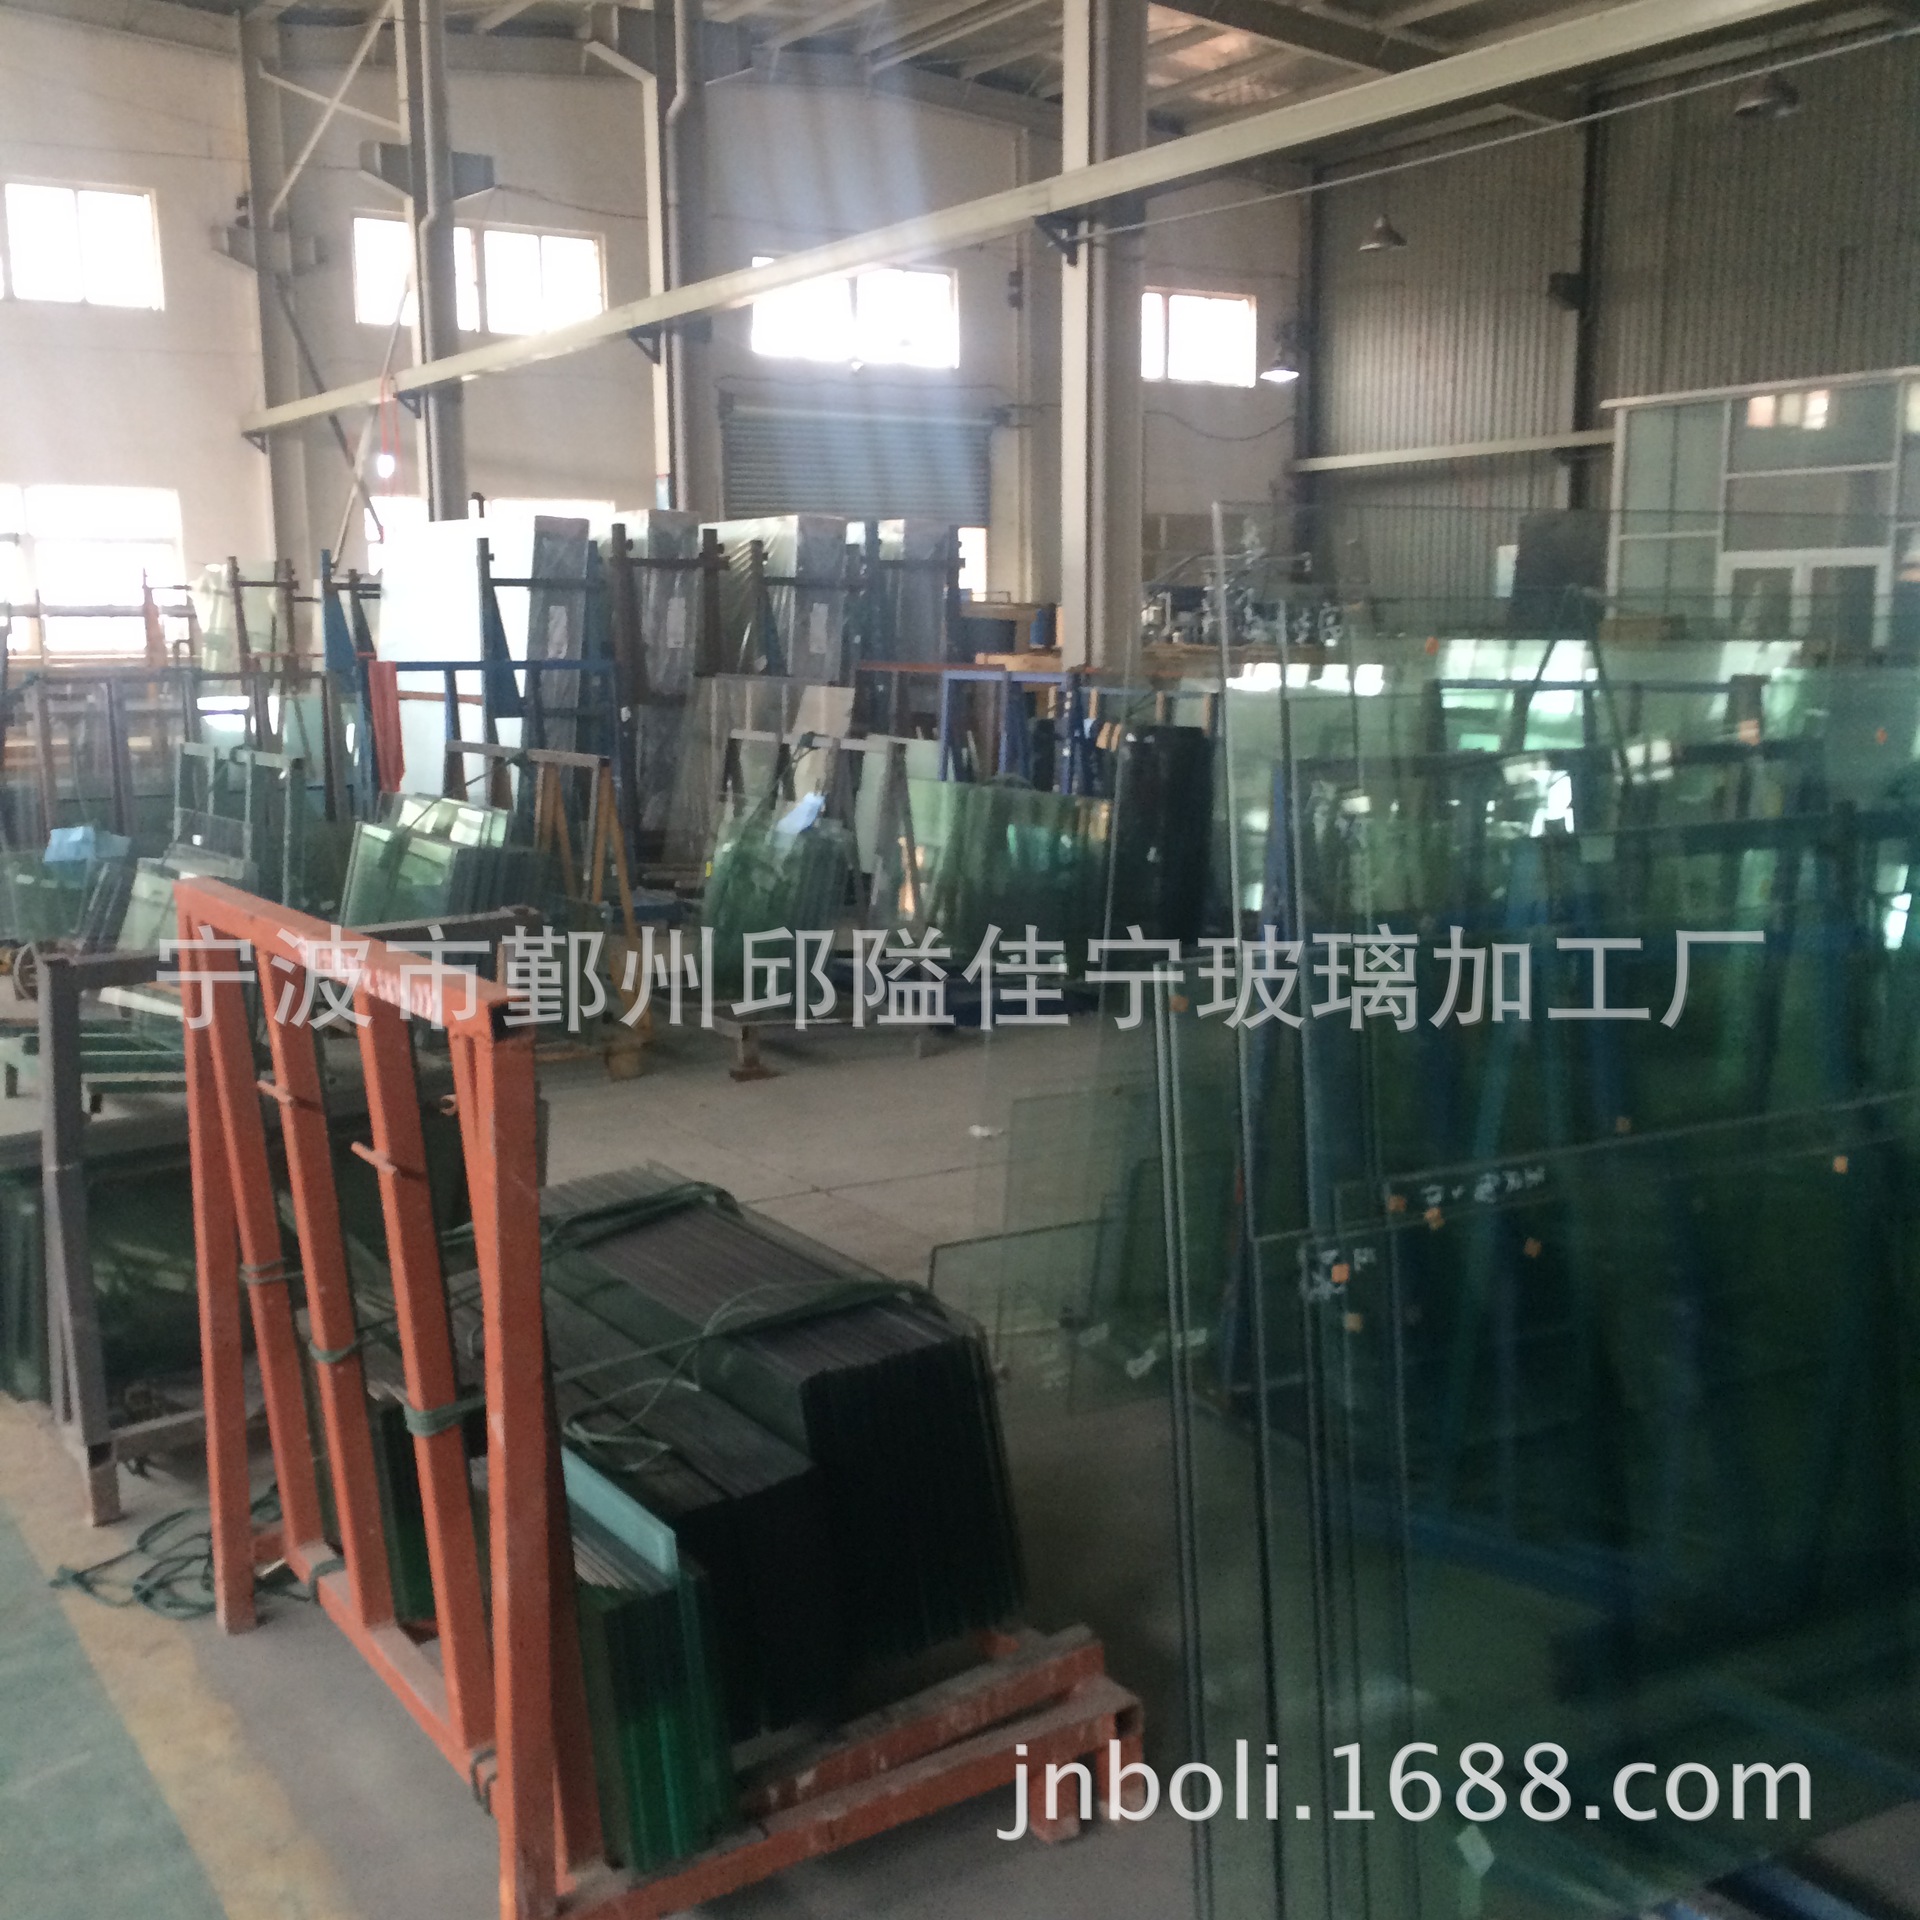 宁波玻璃厂家直销 钢化玻璃 特种玻璃 热弯玻璃 支持批发